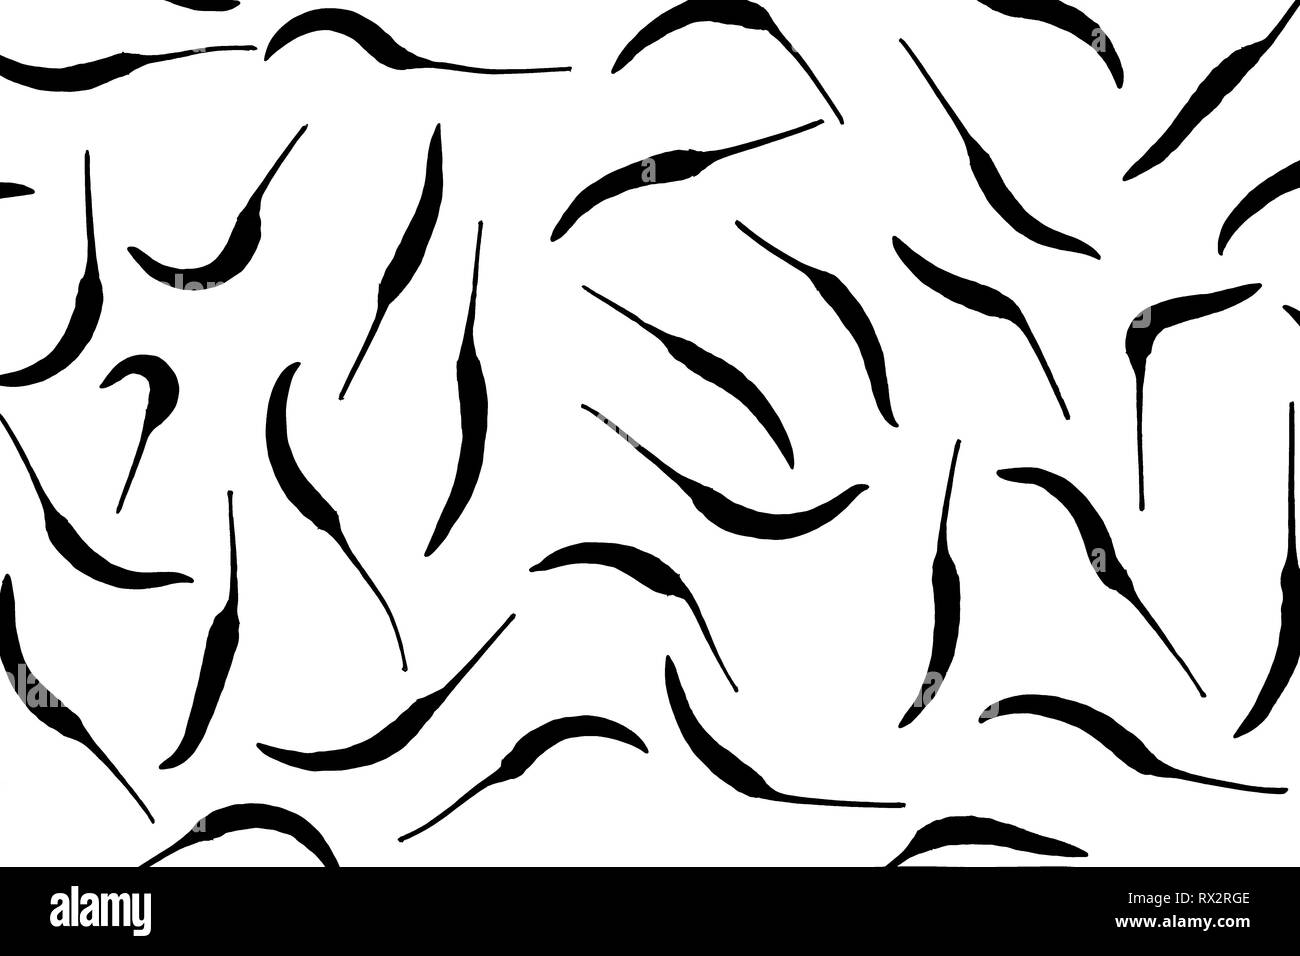 Blick von oben auf die frische Chili ist ein Frame Muster auf weißem Hintergrund. Frische chili Picture Style schwarz und weiß. Stockfoto